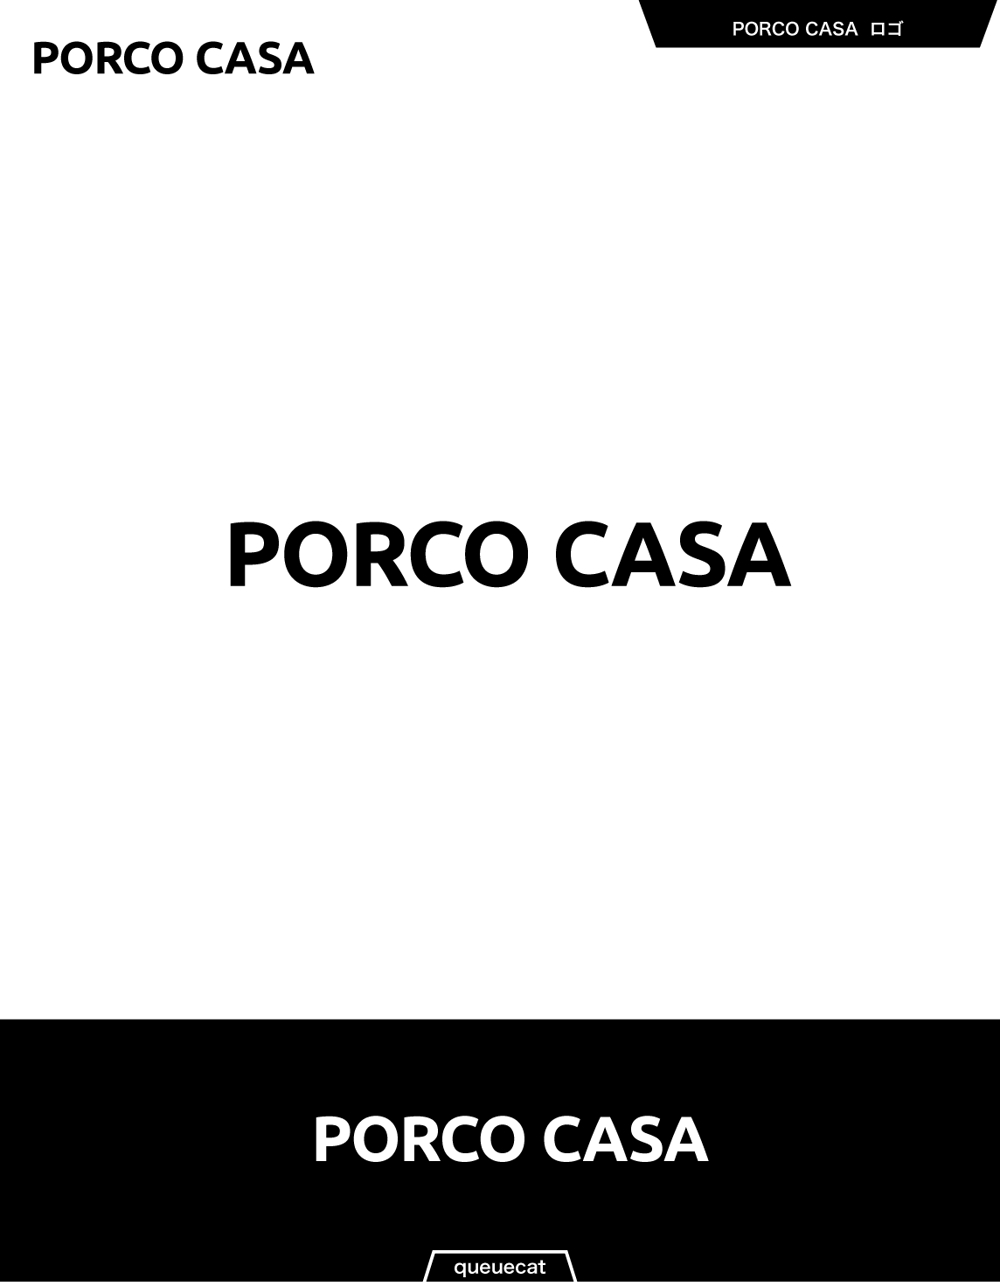 PORCO CASA3_1.jpg